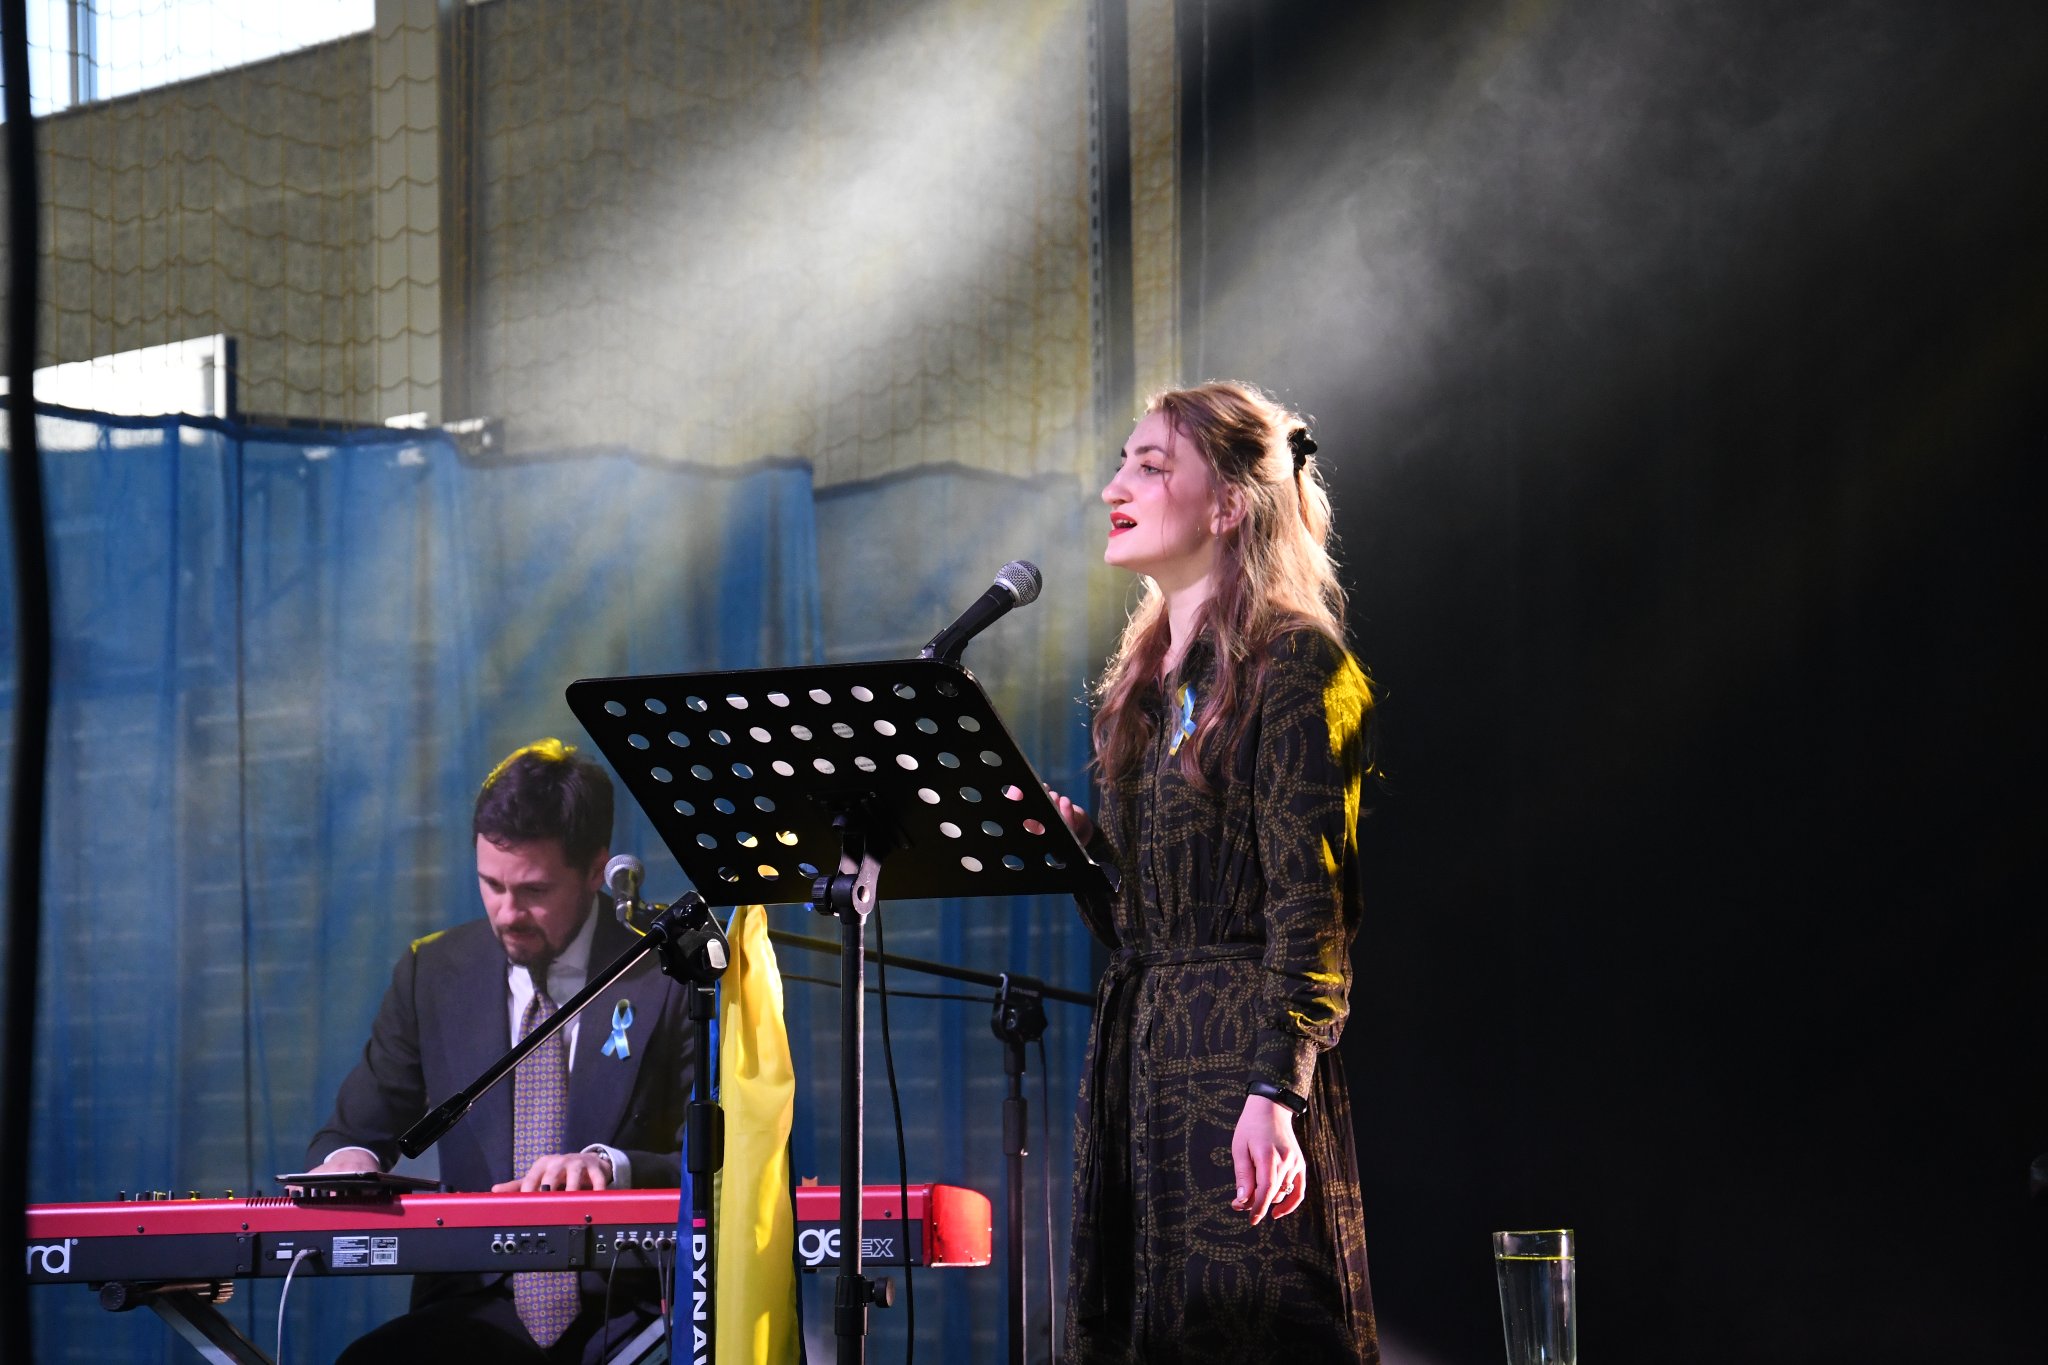 Na scenie widoczne są dwie osoby - wokalistka stojąca przy mikrofonie i po lewej stronie pianista. Wokalistka podczas robienia zdjęcia wykonywała utwór ukraiński.